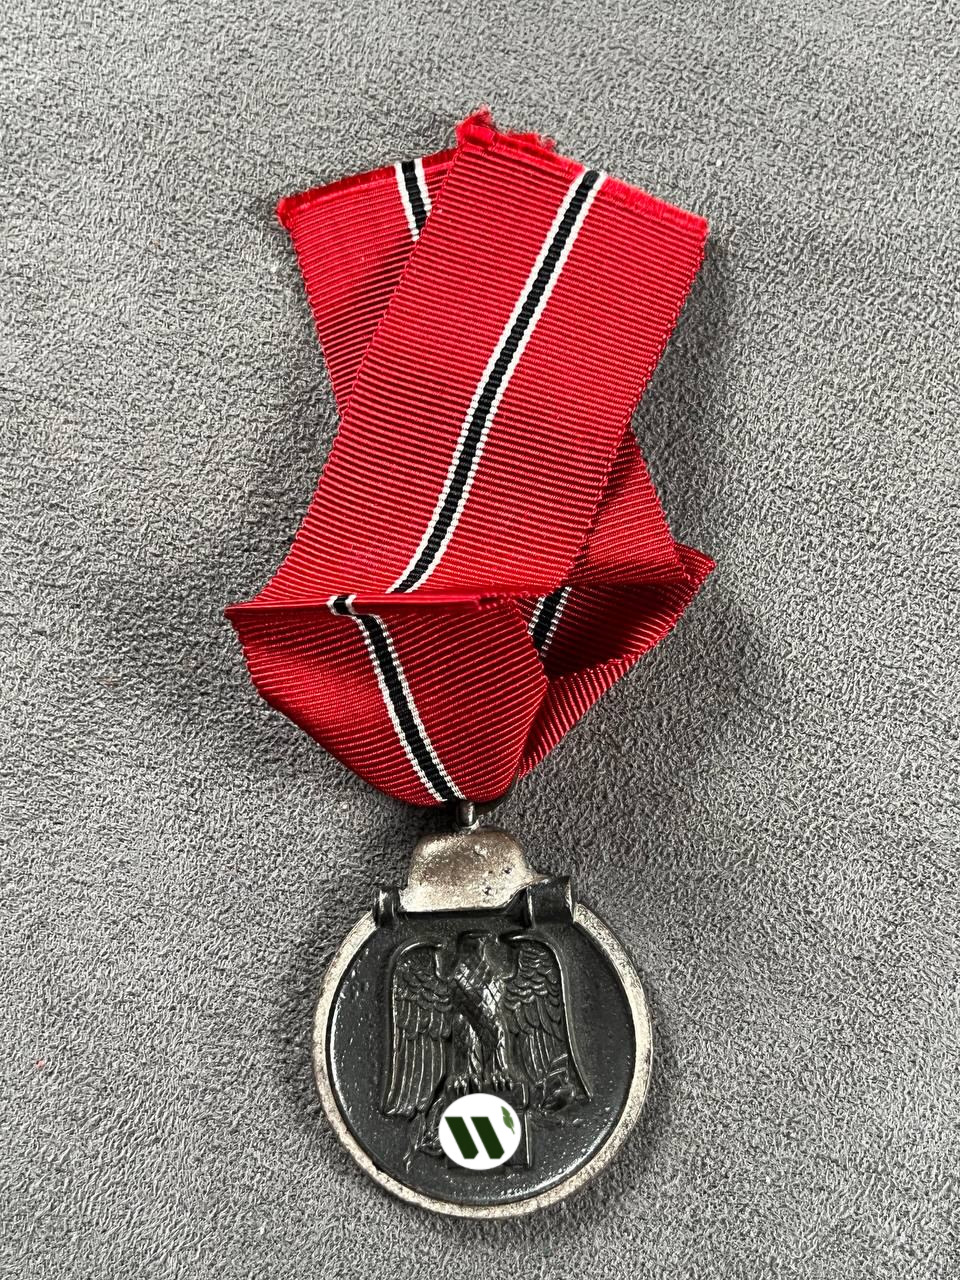 Медаль «За зимнюю кампанию на Востоке 1941/42» От Алексея Сильченко